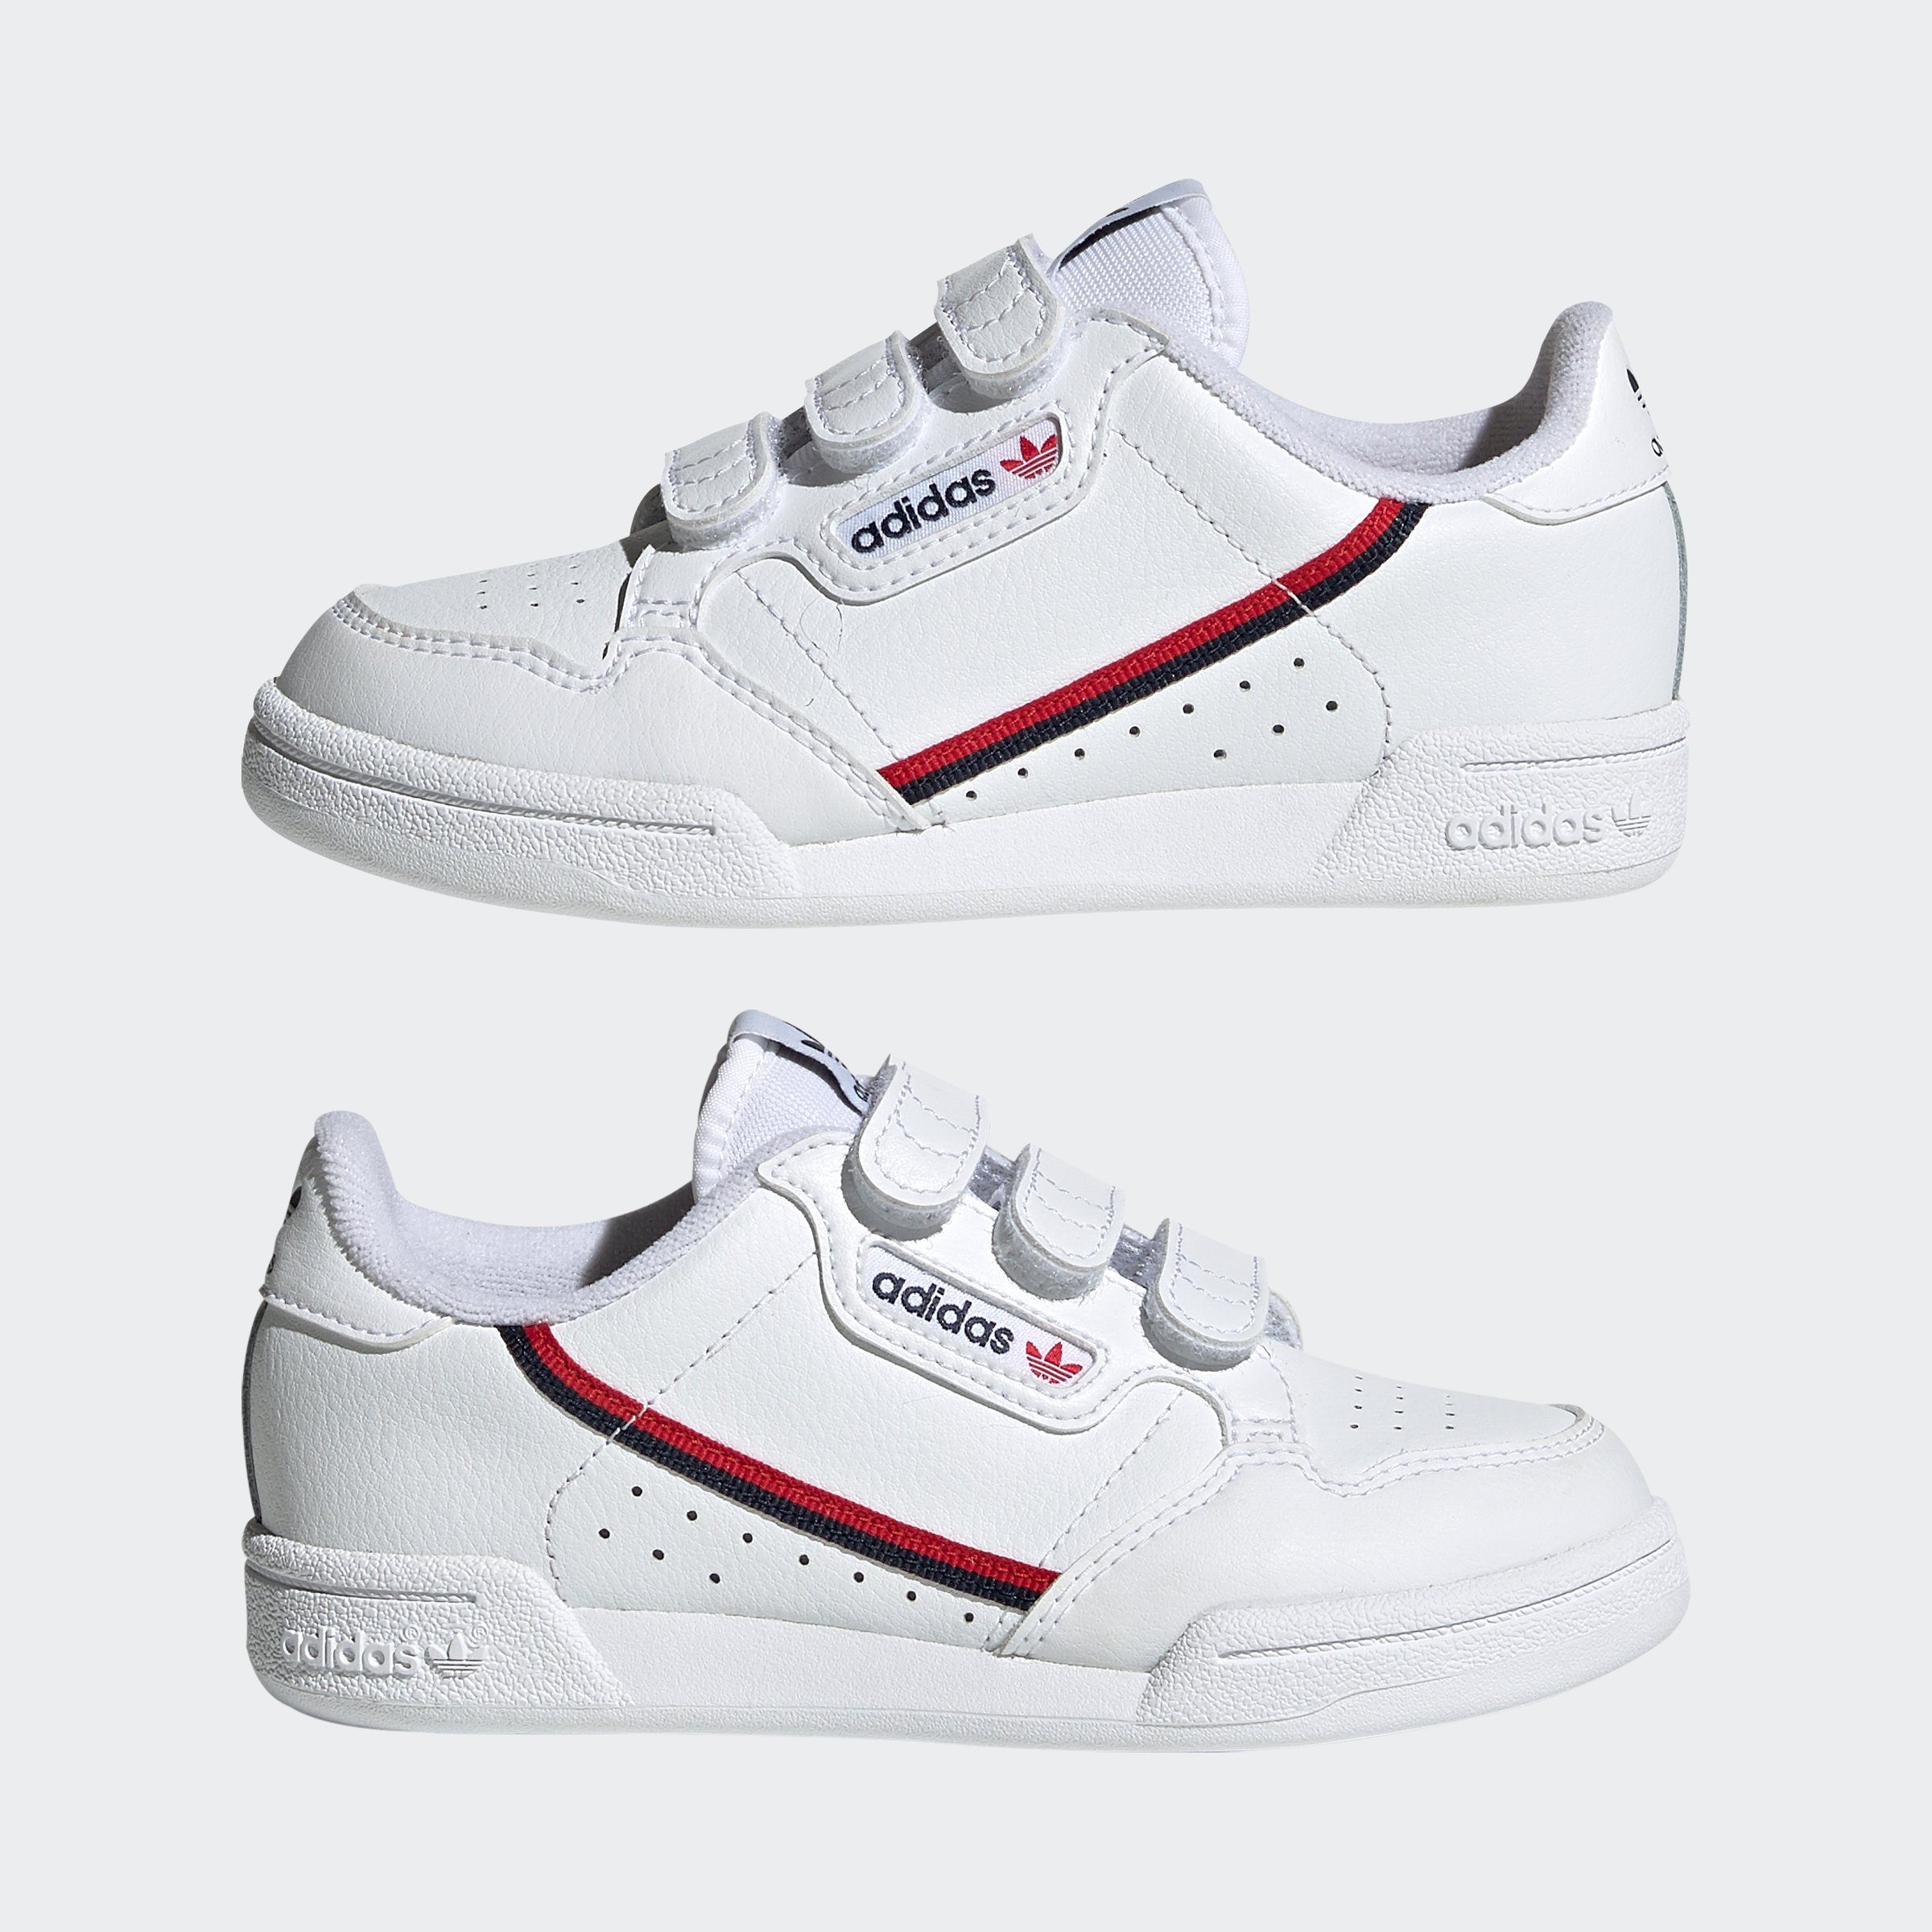 adidas Originals mit CONTINENTAL für Klettverschluss Sneaker Jugendliche 80